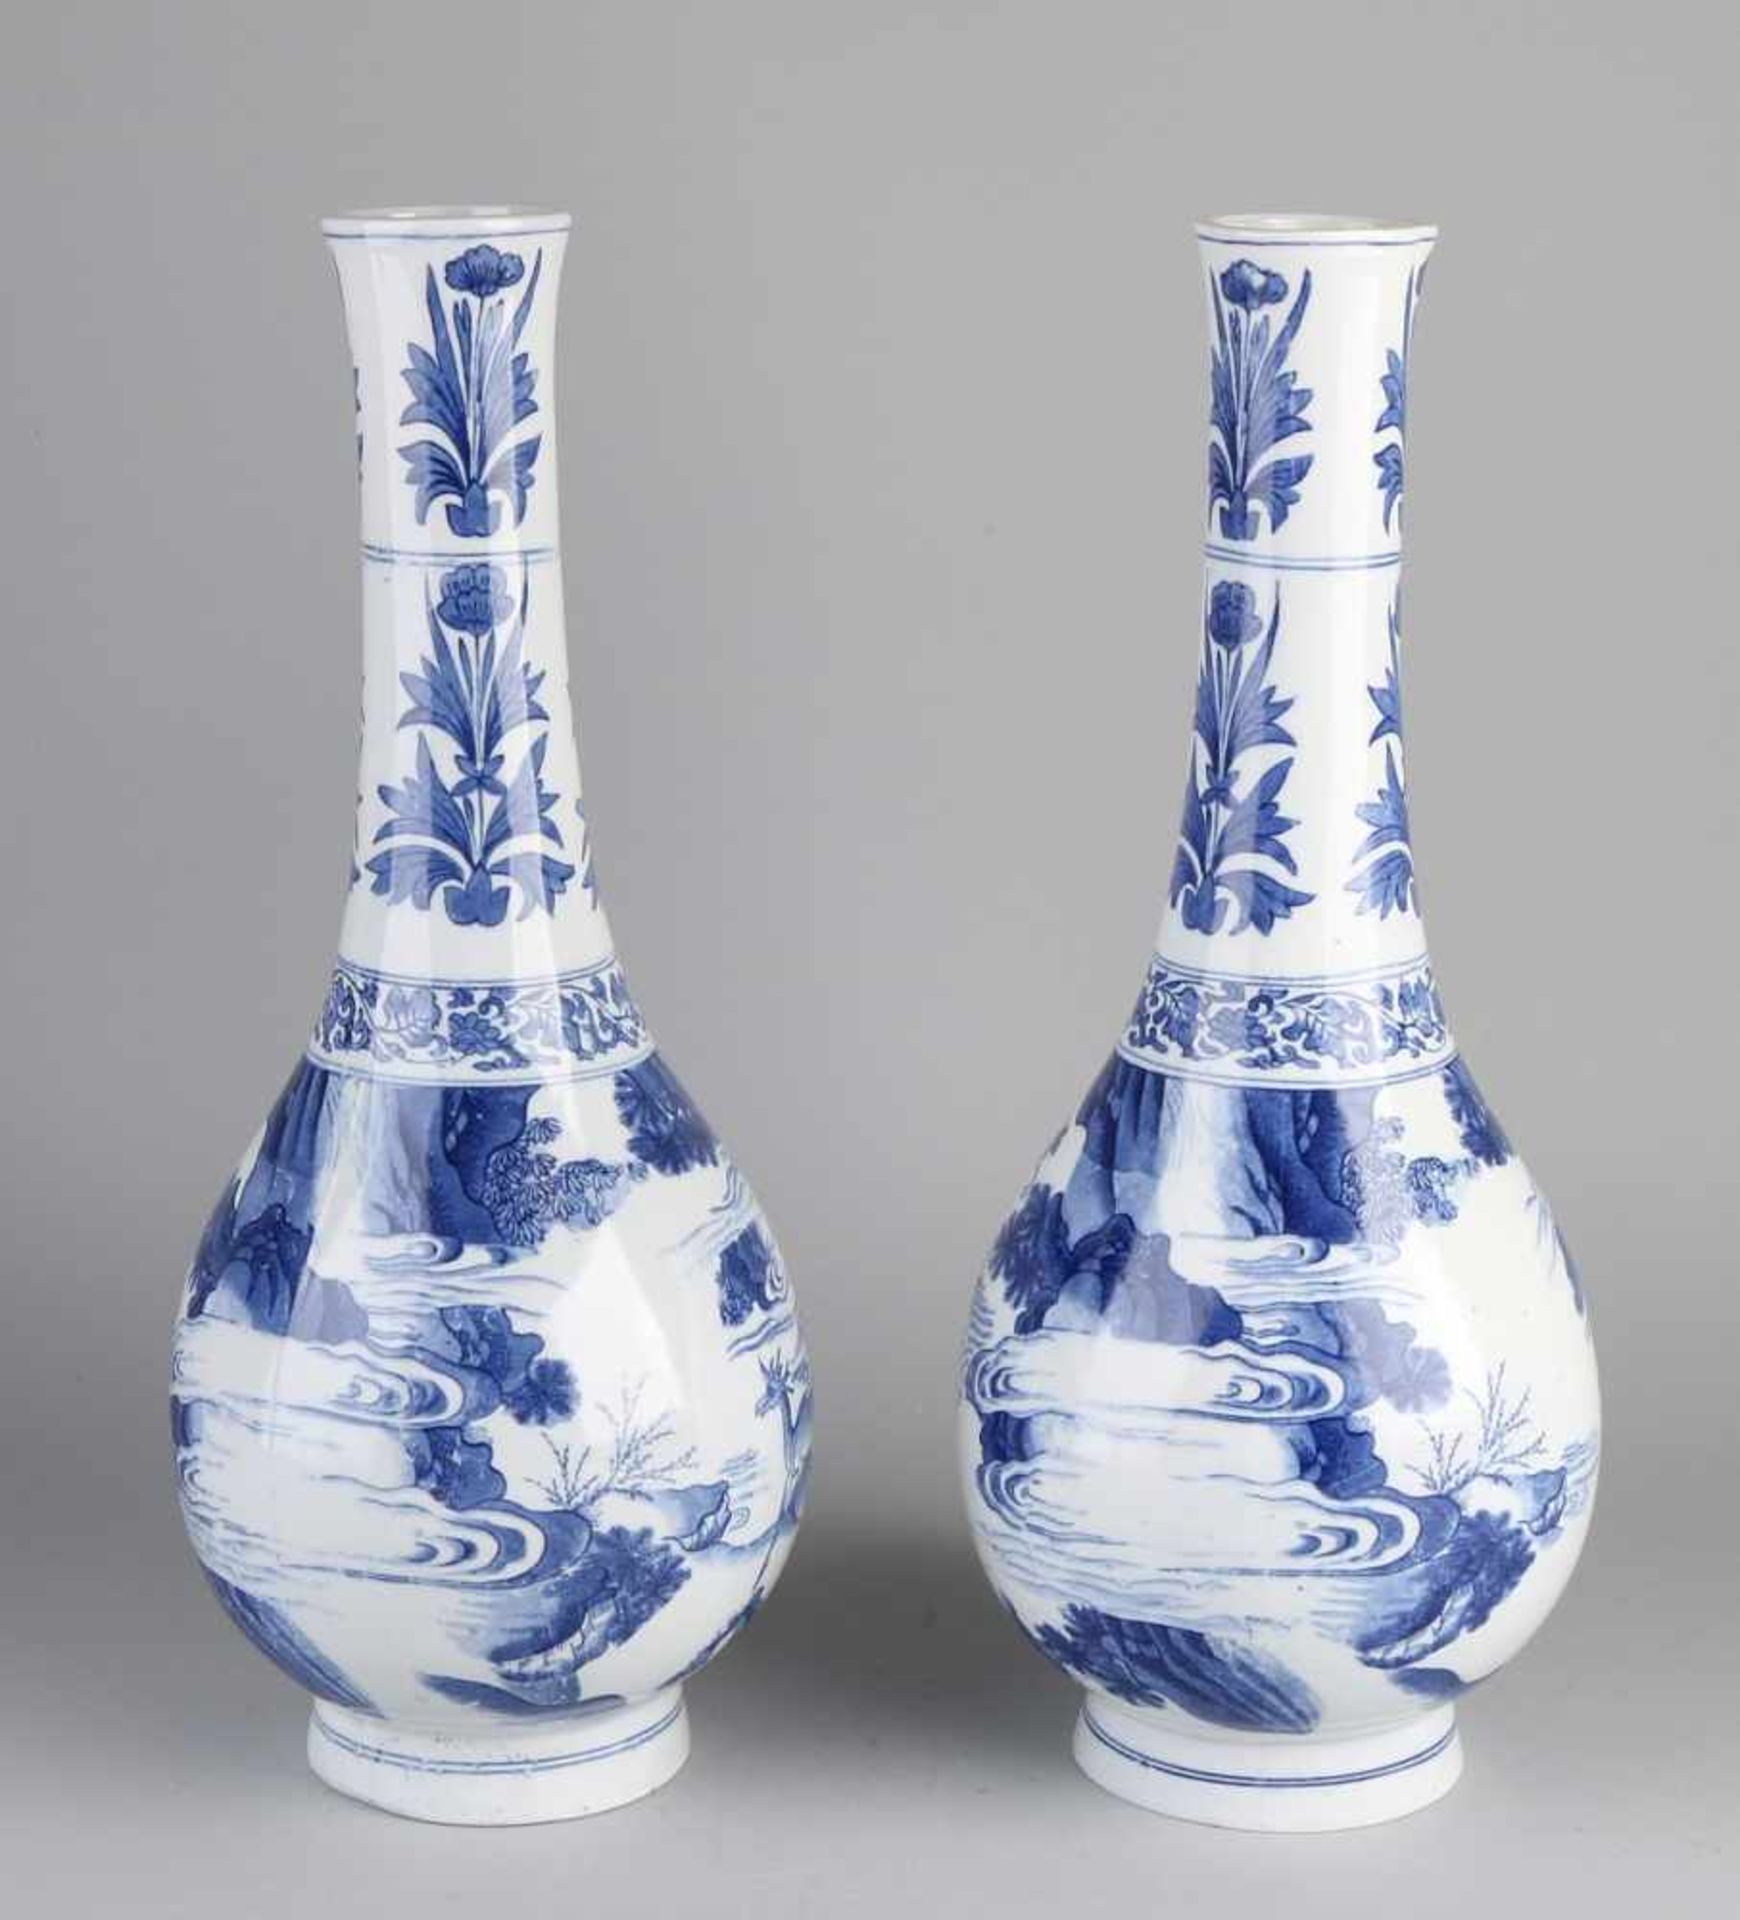 Zwei große chinesische Porzellanvasen nach altem Beispiel. Lithographiert. Größe: H 40,5 cm. In - Bild 2 aus 2